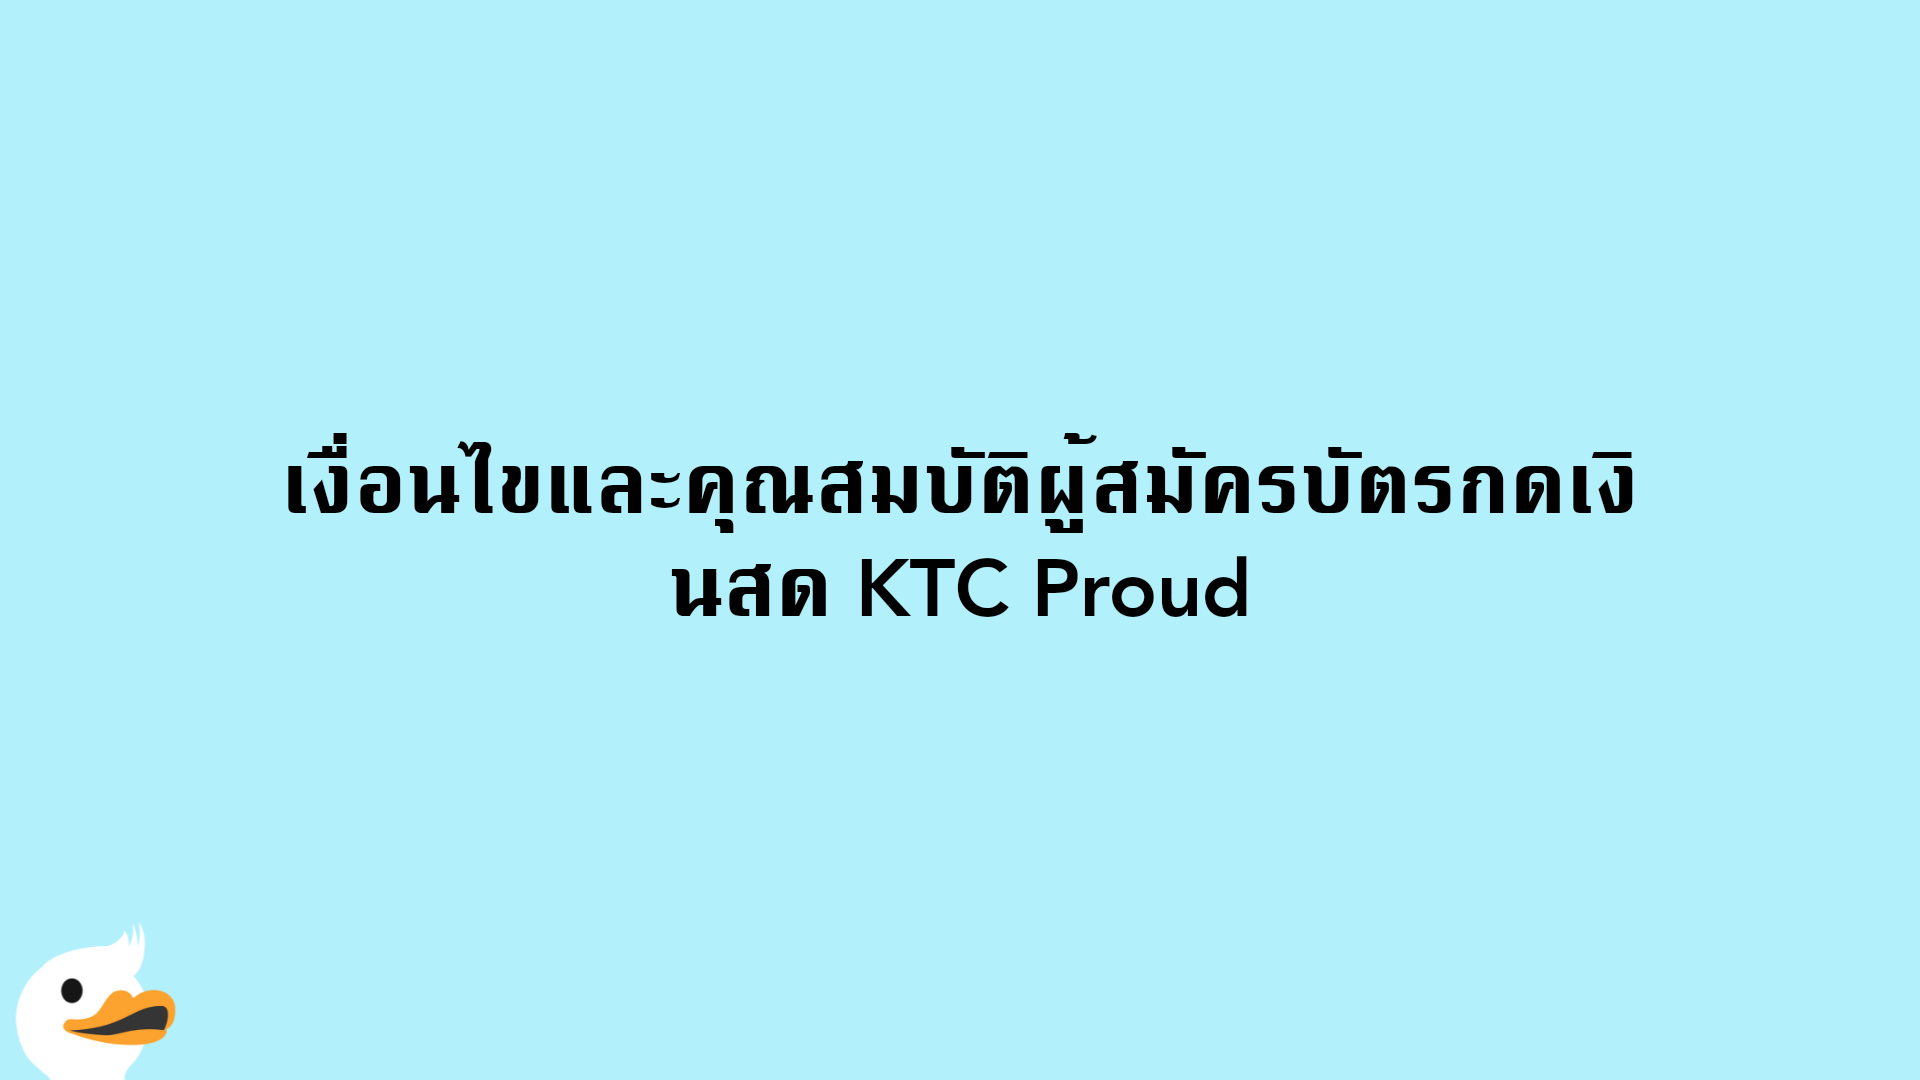 เงื่อนไขและคุณสมบัติผู้สมัครบัตรกดเงินสด KTC Proud